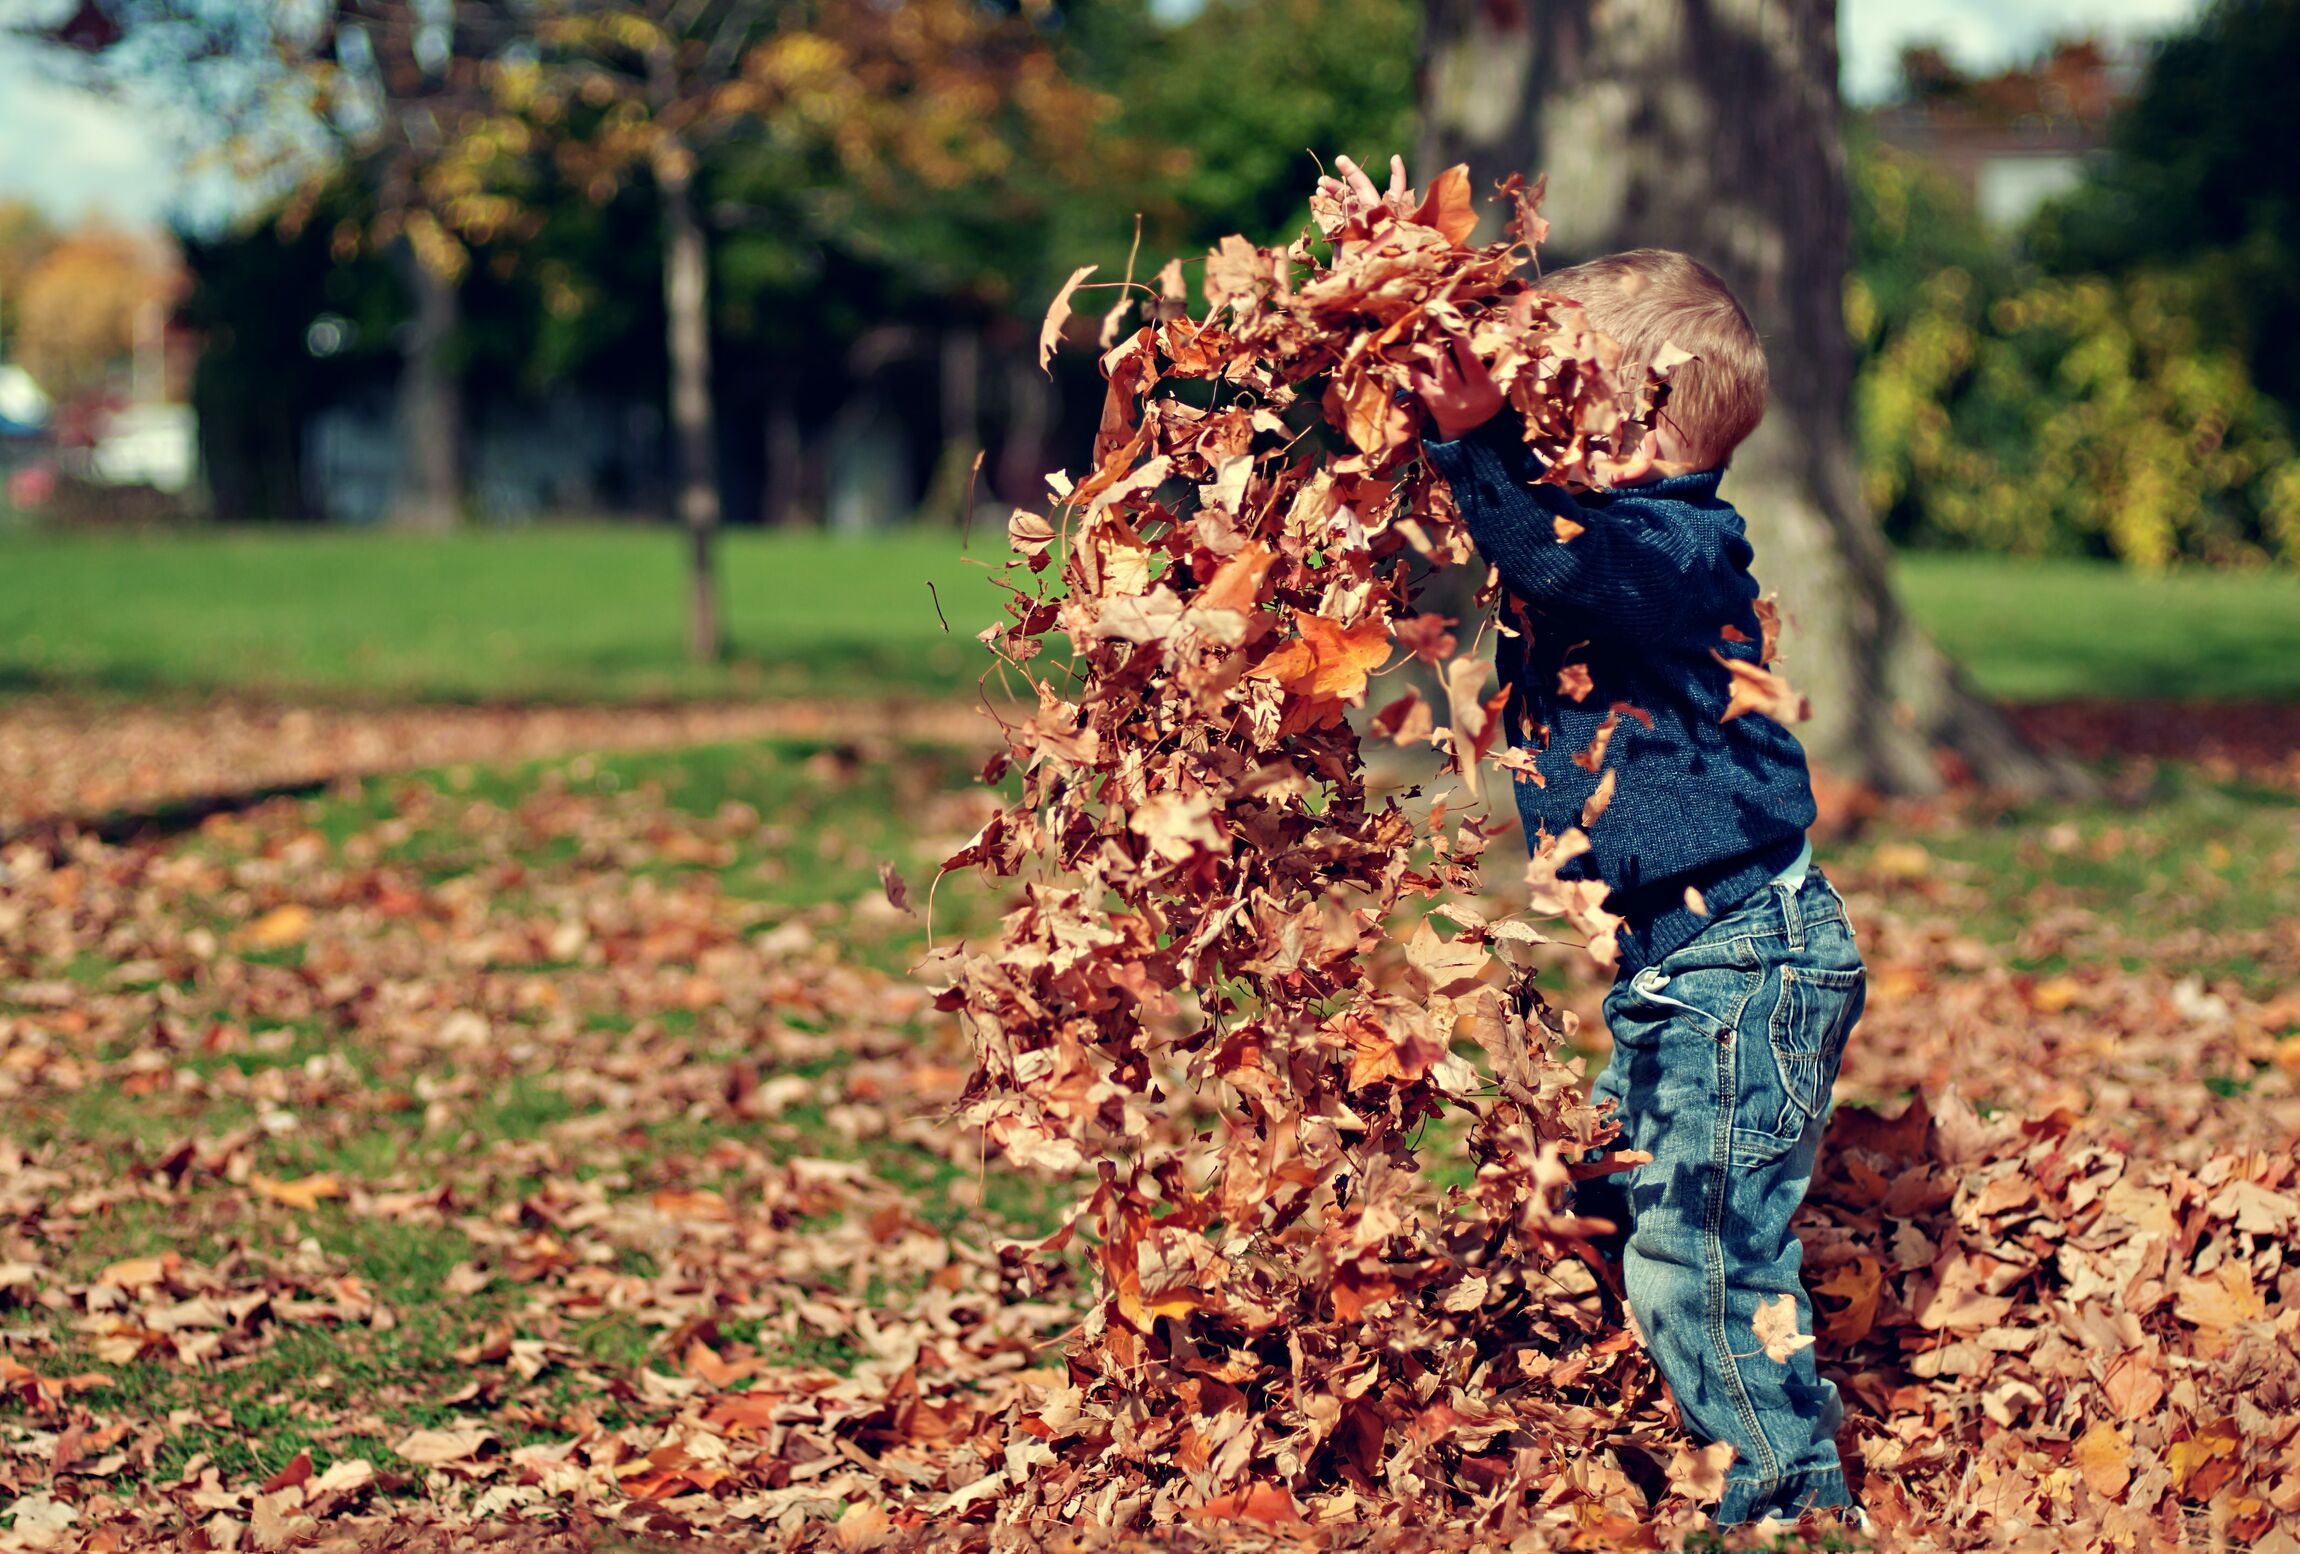 Kind-Herbstlaub_unsplash